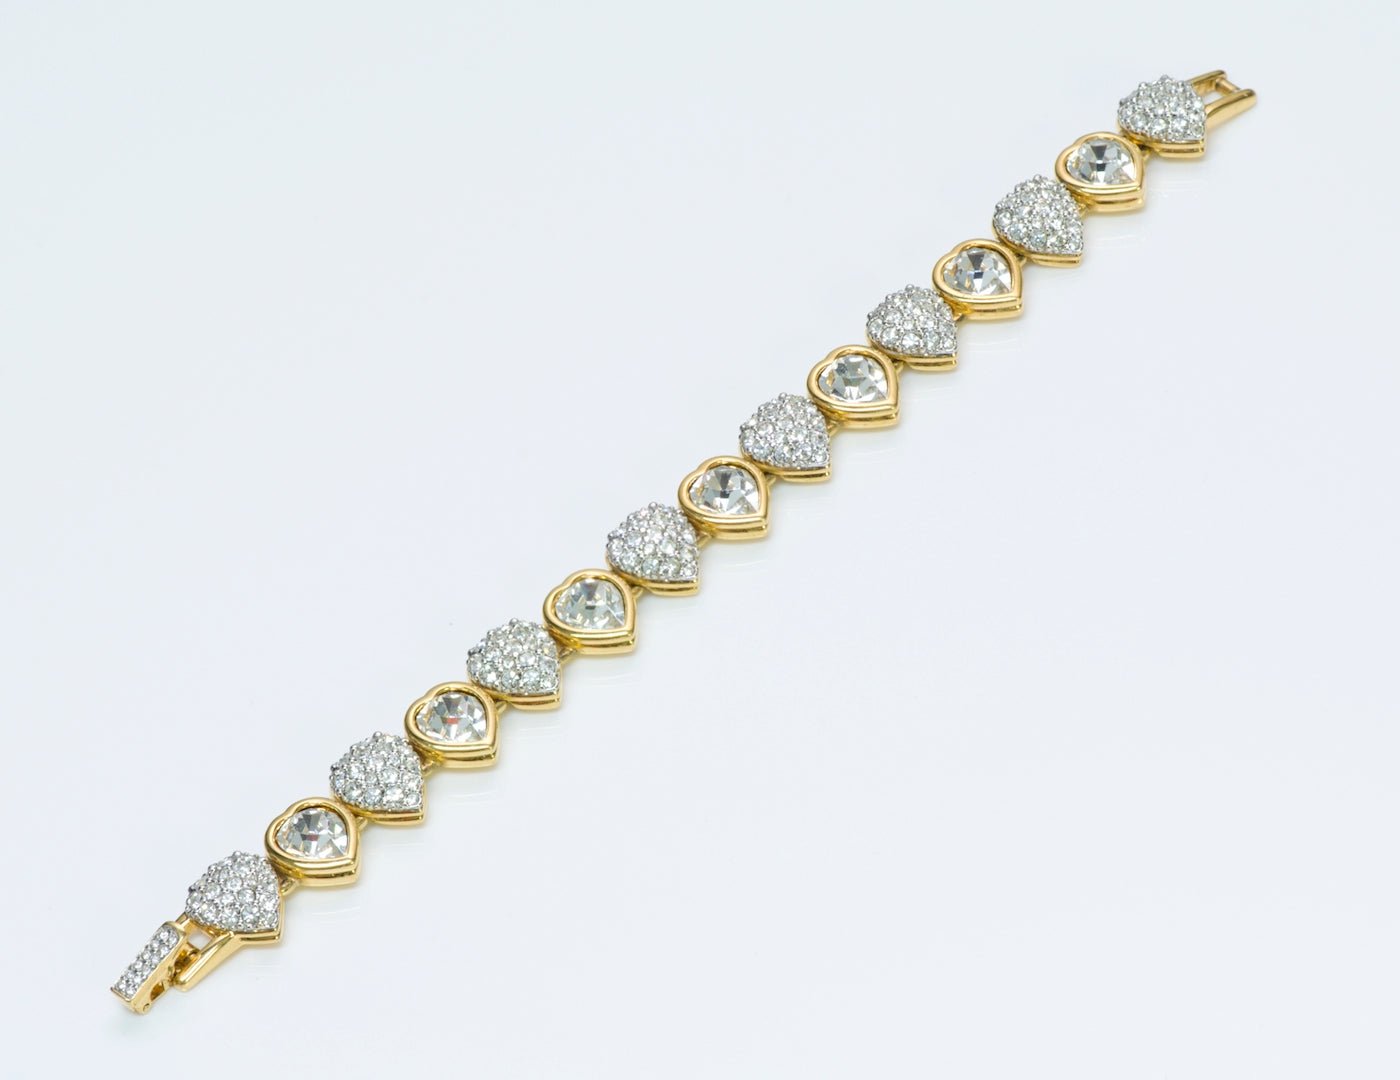 Swarovski Crystal Heart Necklace Bracelet